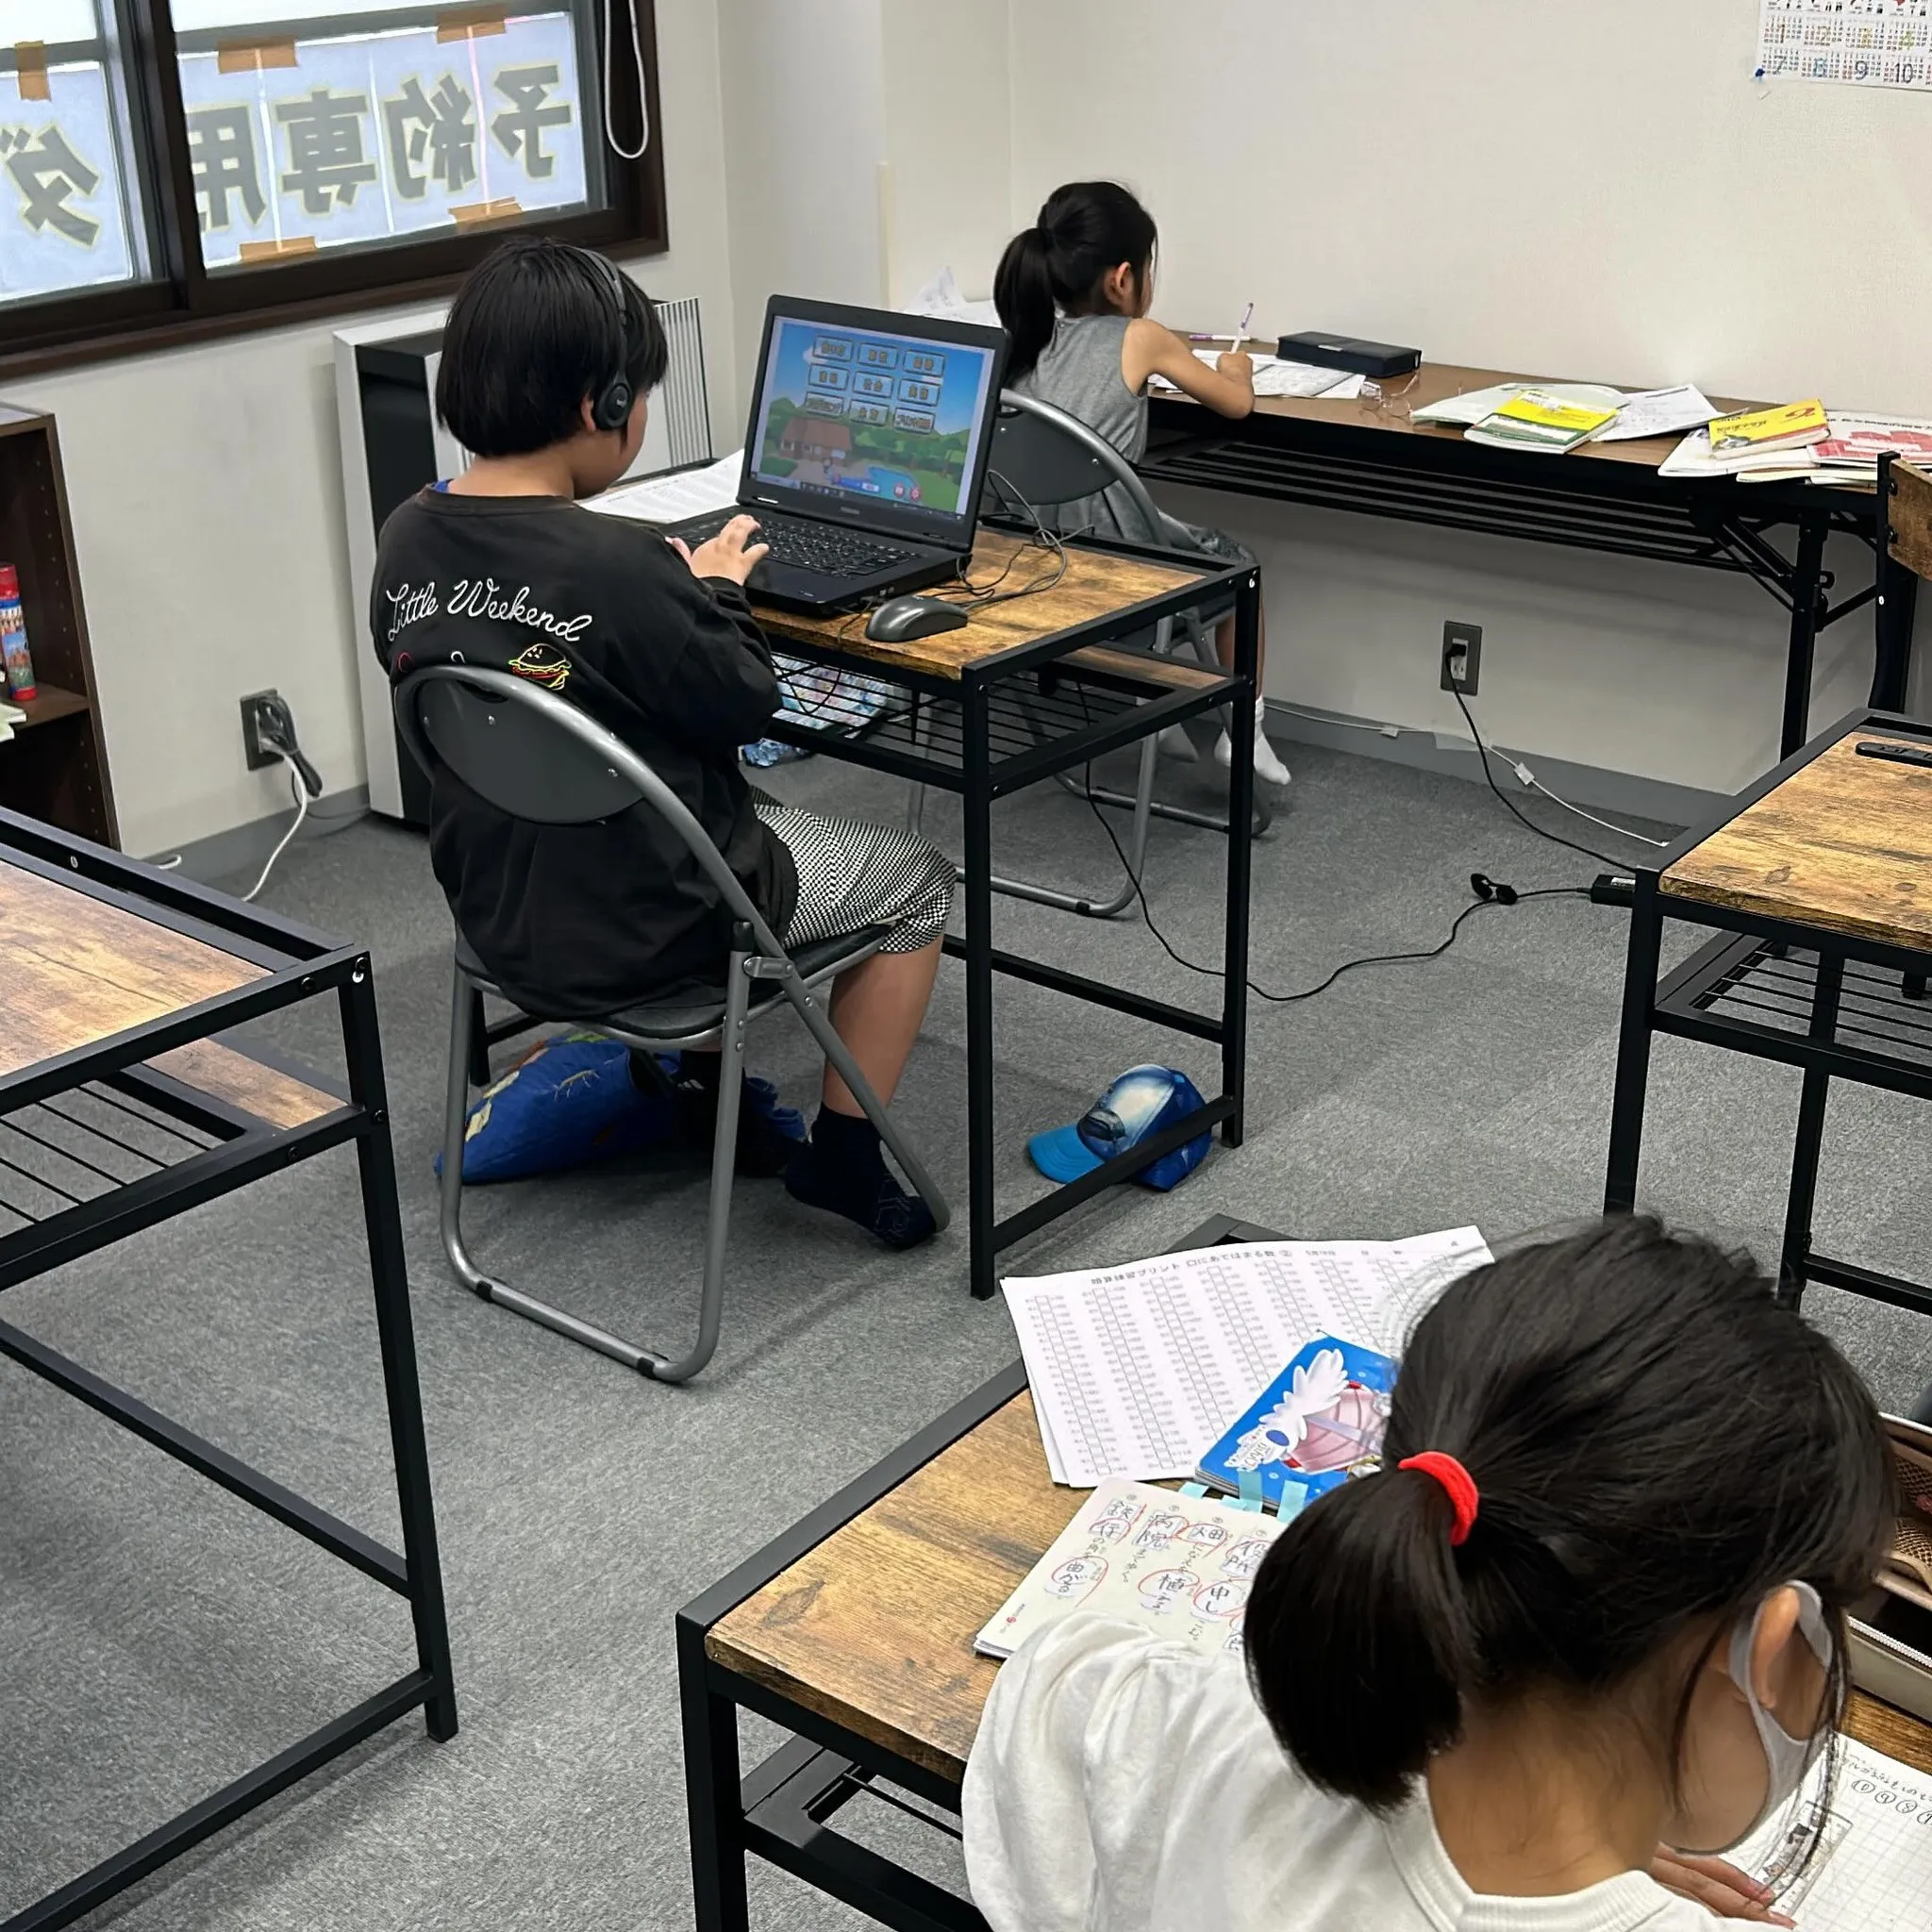 パソコン学習や漢字練習、学校の課題等色々やってます。